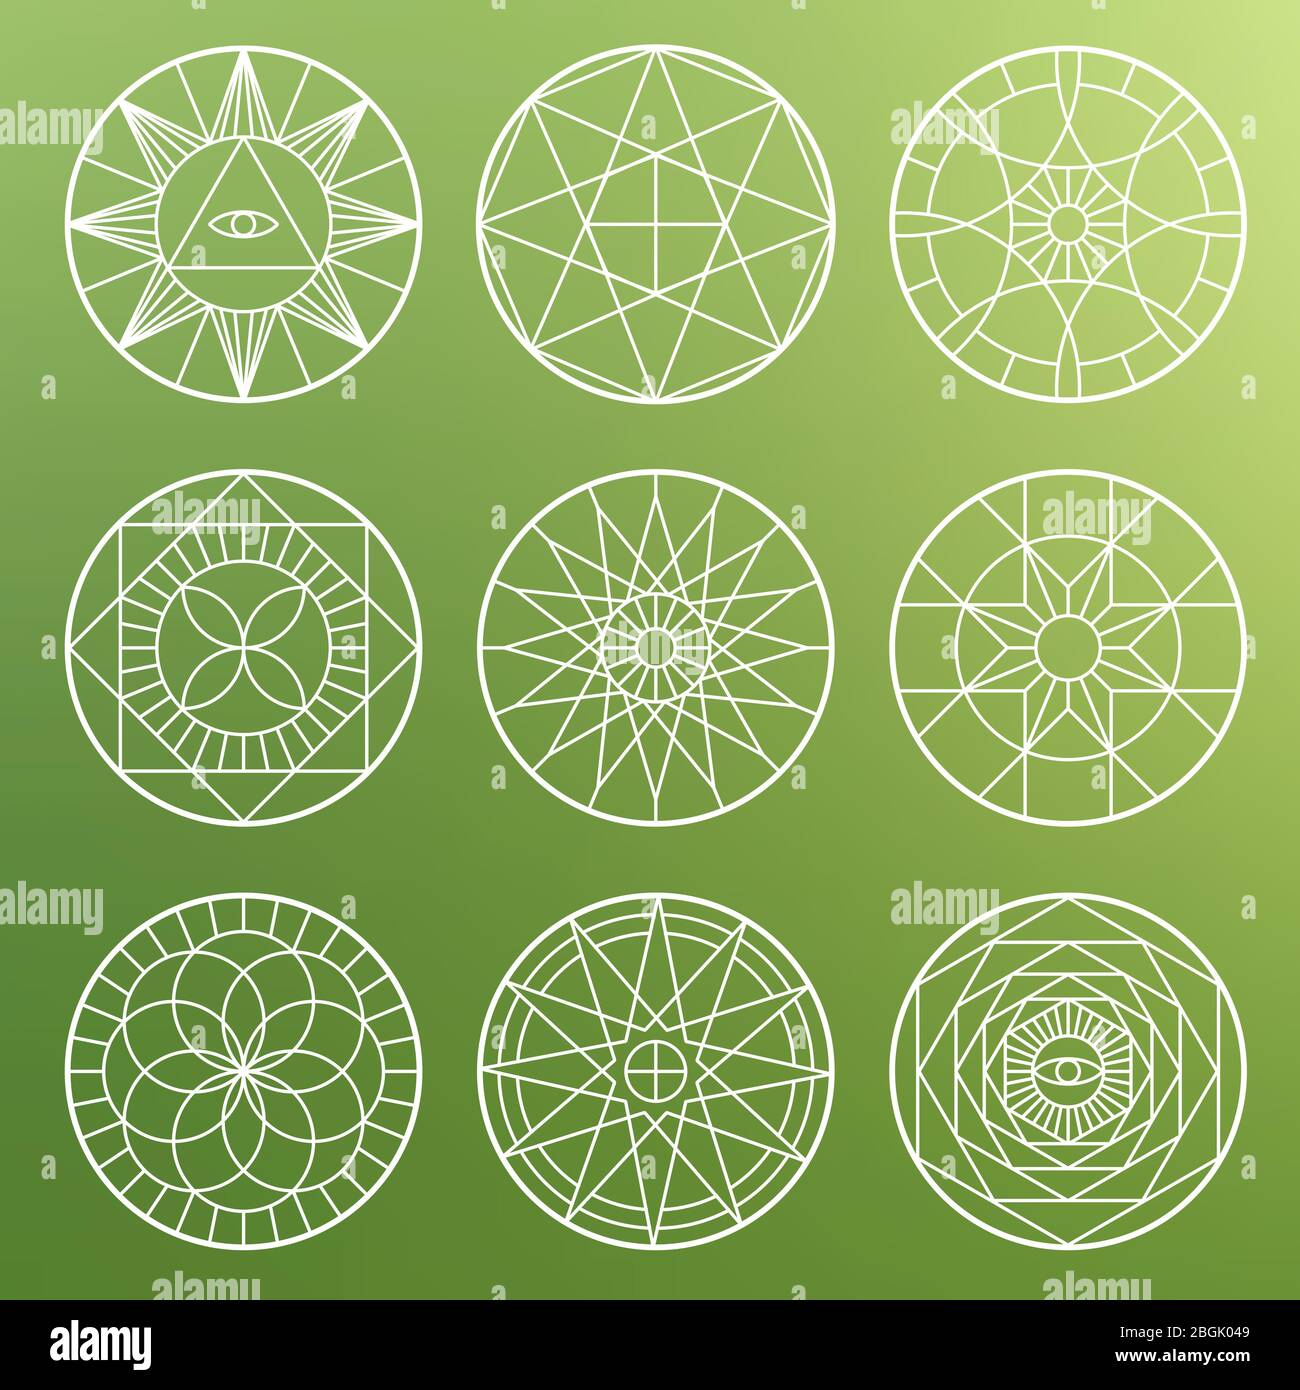 Weiße esoterische geometrische Pentagramme. Spirituelle heilige mystische Vektor-Symbole auf verblurten Hintergrund Illustration Stock Vektor